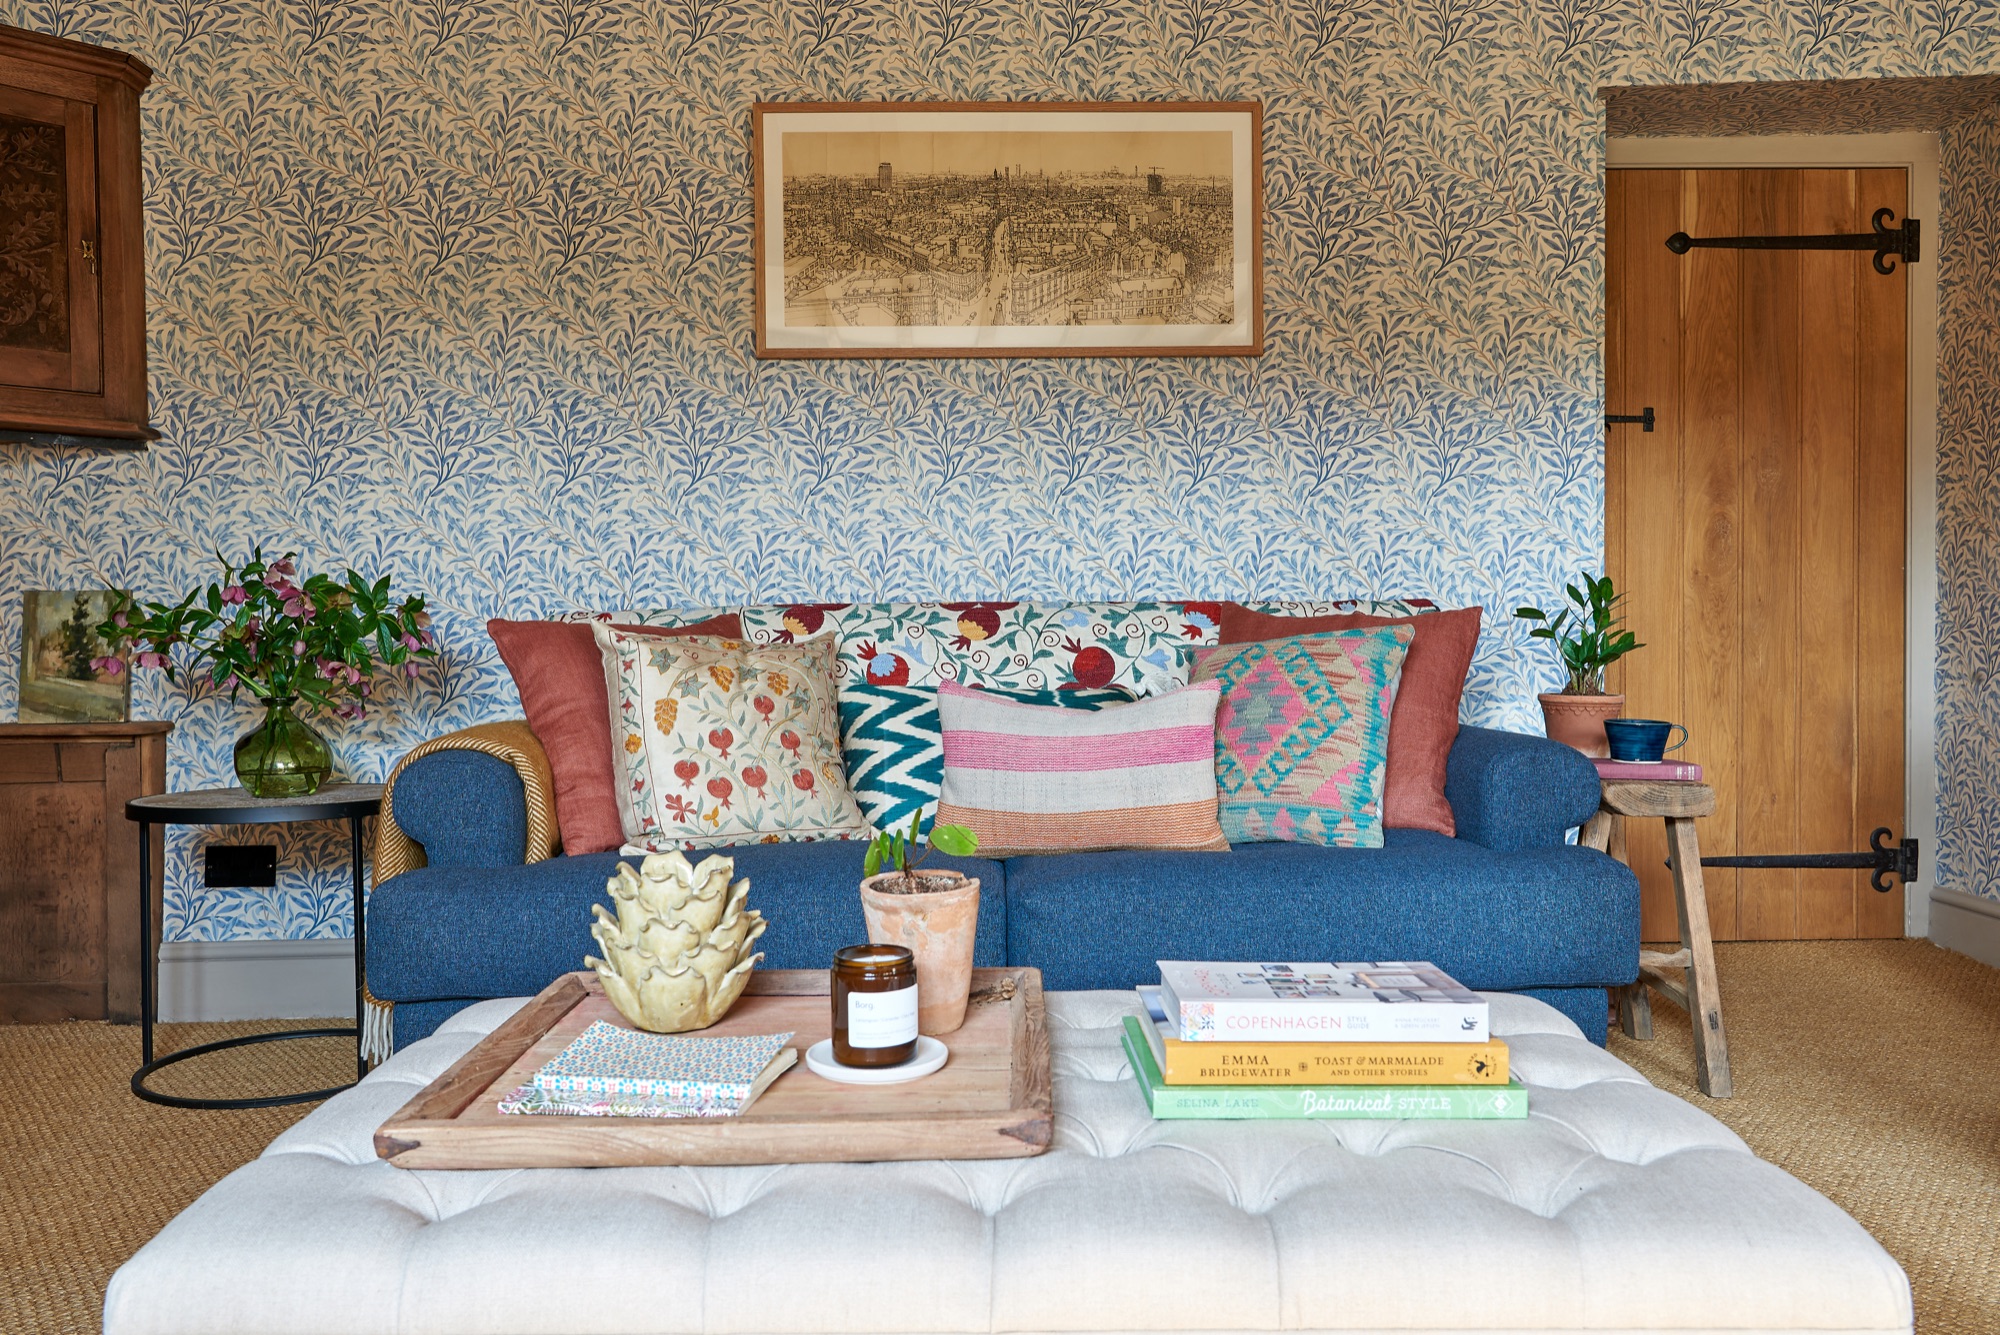 Interior styling, sofa.com,suzani,kilim cushions,william Morris wallpaper,william morris